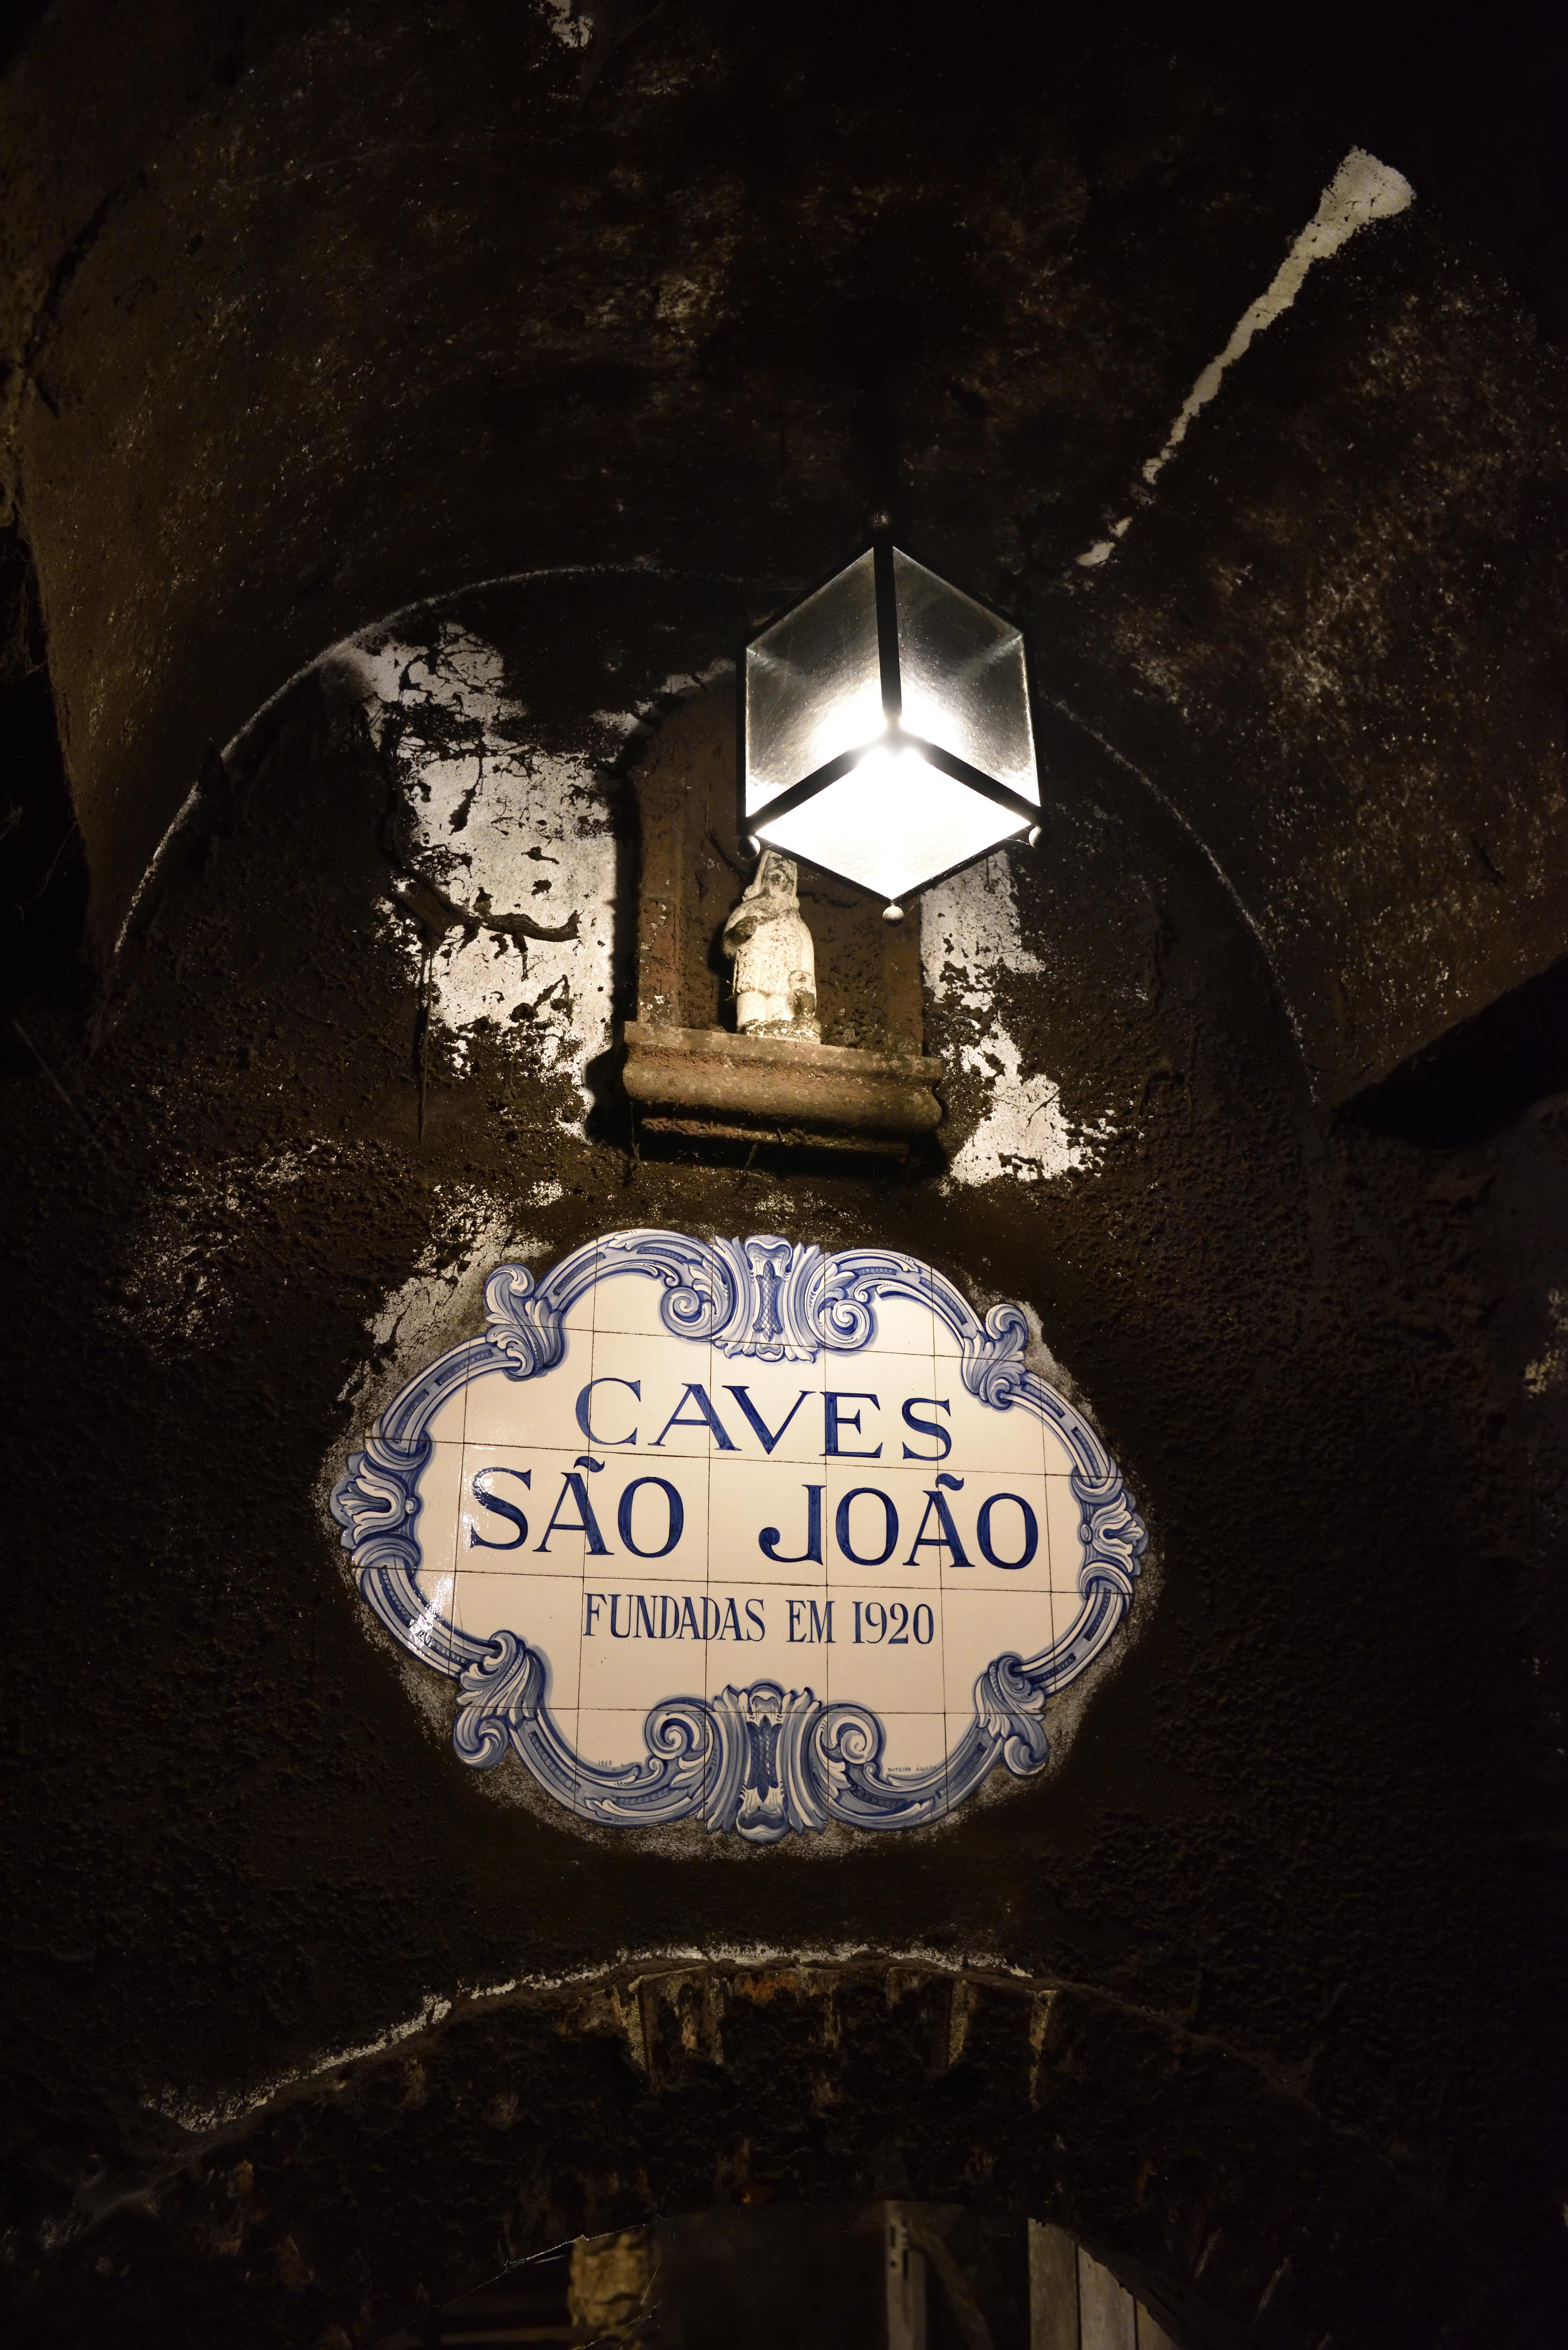 Classic wines II São João